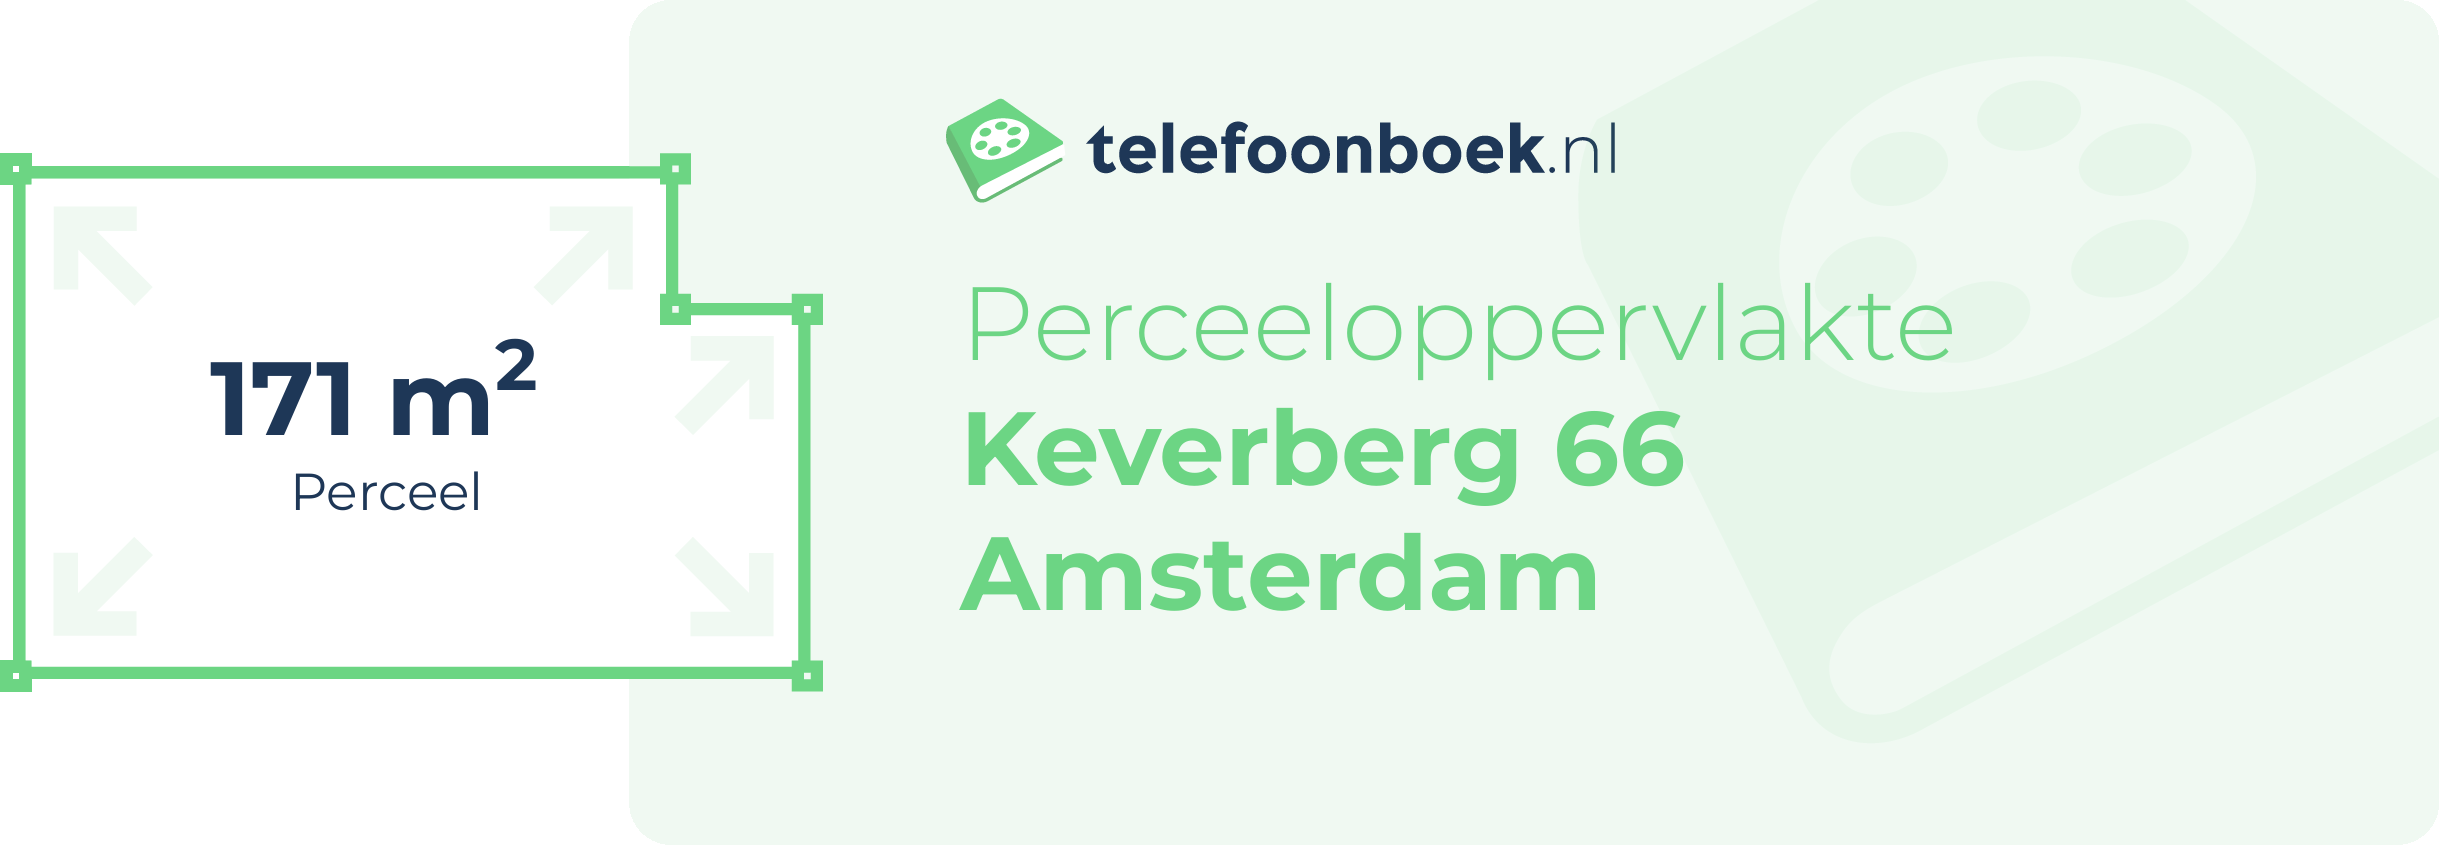 Perceeloppervlakte Keverberg 66 Amsterdam